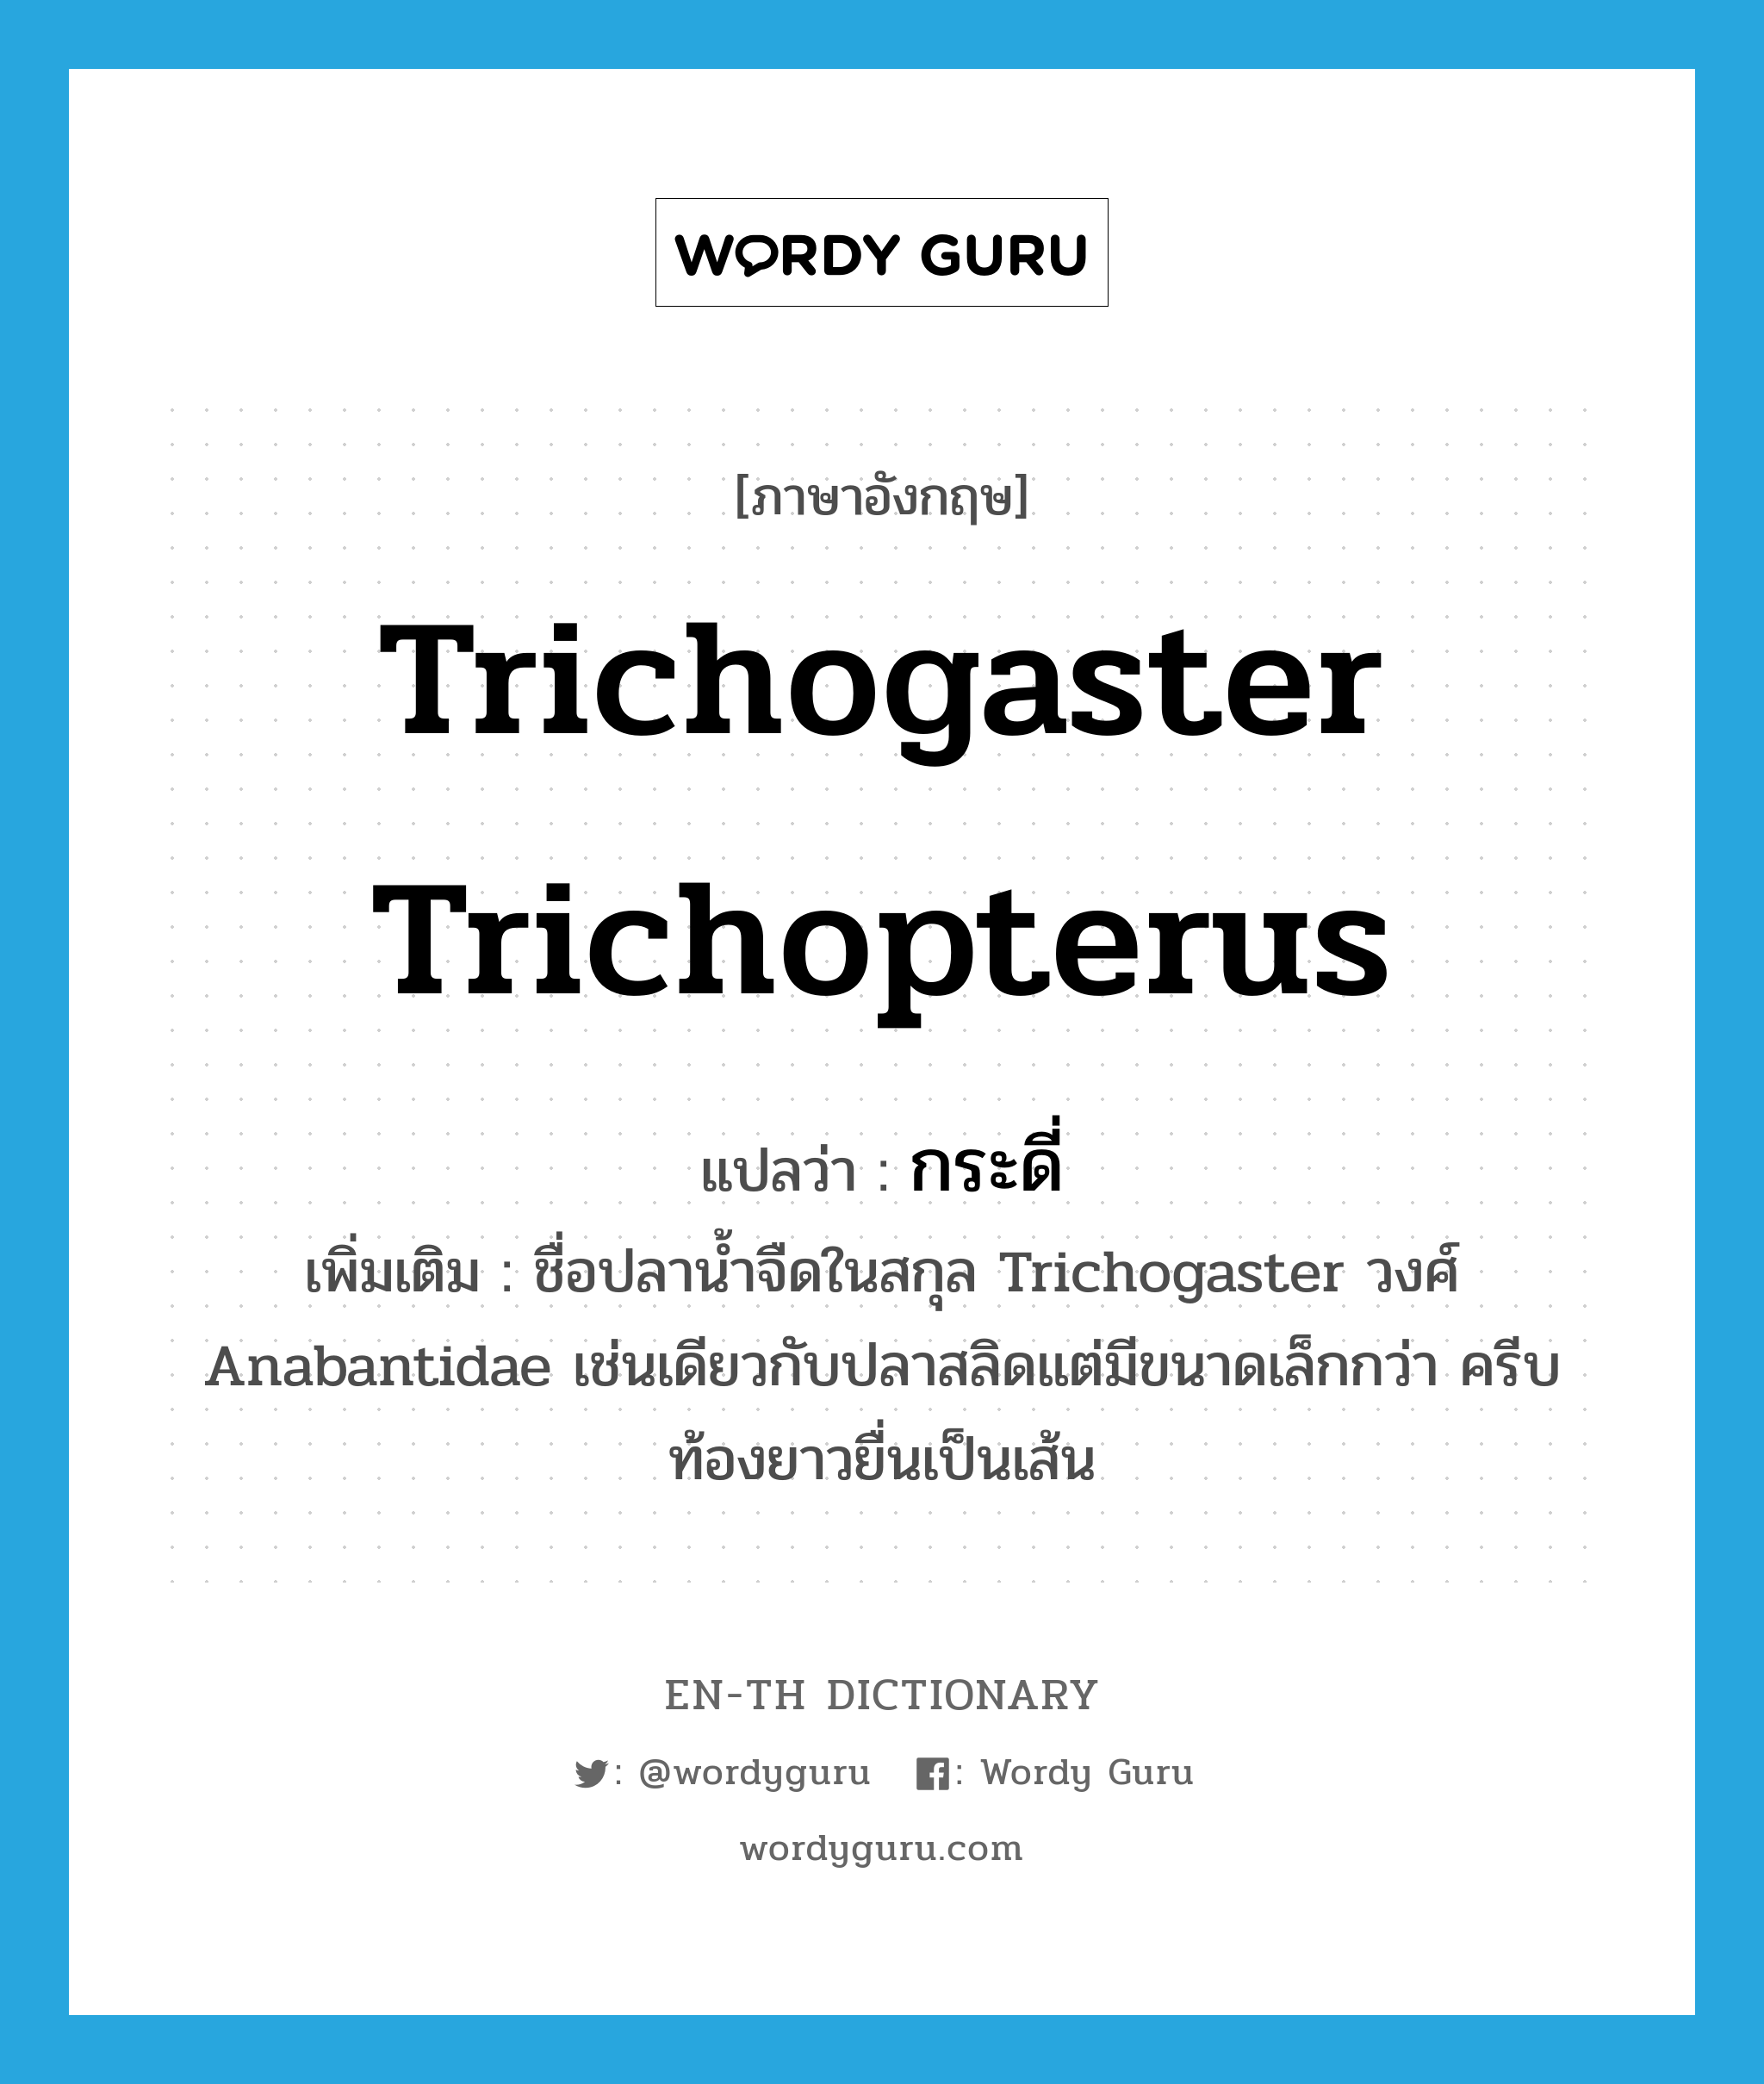 กระดี่ ภาษาอังกฤษ?, คำศัพท์ภาษาอังกฤษ กระดี่ แปลว่า Trichogaster trichopterus ประเภท N เพิ่มเติม ชื่อปลาน้ำจืดในสกุล Trichogaster วงศ์ Anabantidae เช่นเดียวกับปลาสลิดแต่มีขนาดเล็กกว่า ครีบท้องยาวยื่นเป็นเส้น หมวด N